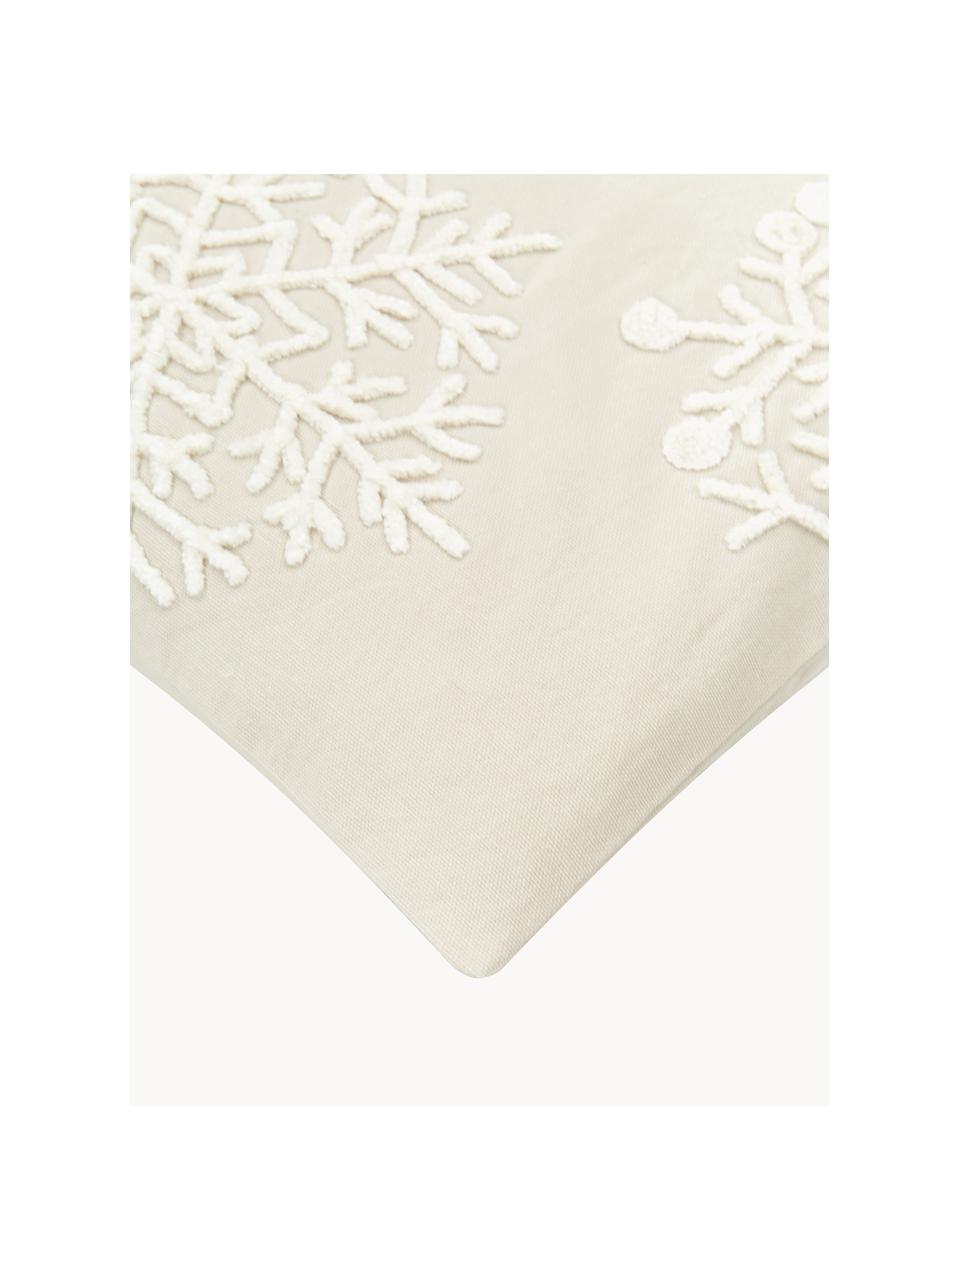 Bestickte Kissenhülle Snowflake, 100 % Baumwolle, Beige, Cremeweiß, B 45 x L 45 cm